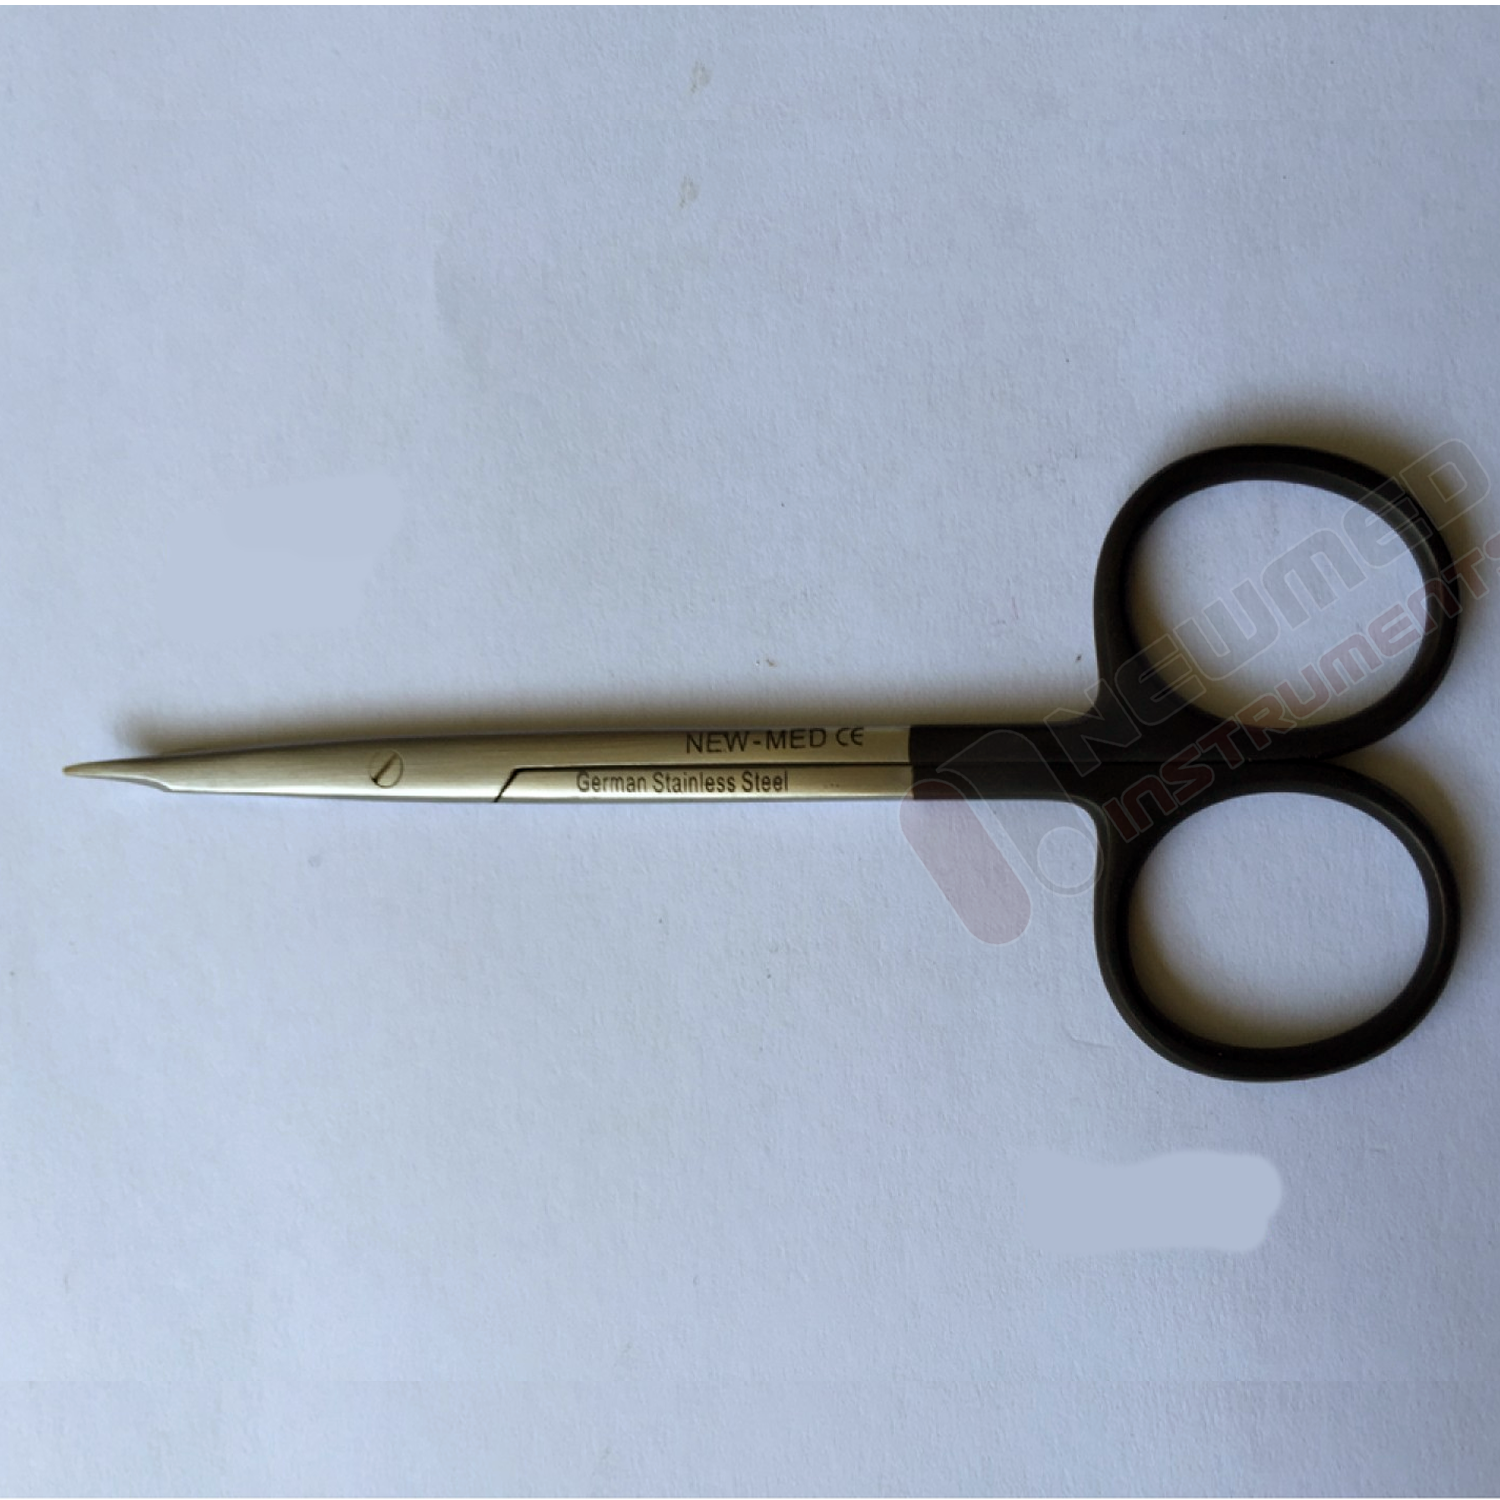 vascular scissors straight delicate pattern blade